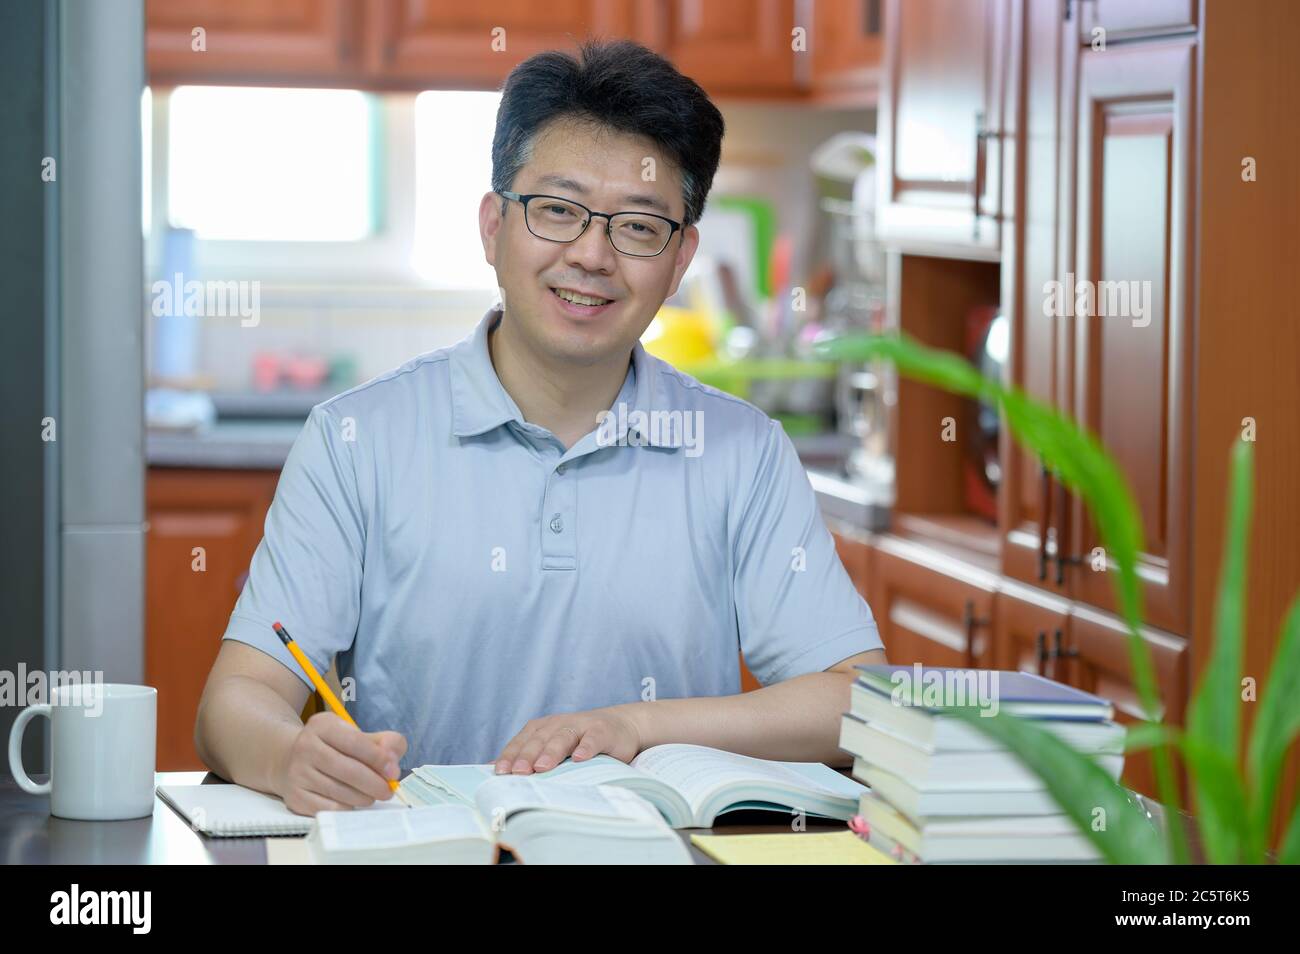 Asiatischer Mann mittleren Alters, der zu Hause am Schreibtisch sitzt, ein Buch liest und studiert. Stockfoto